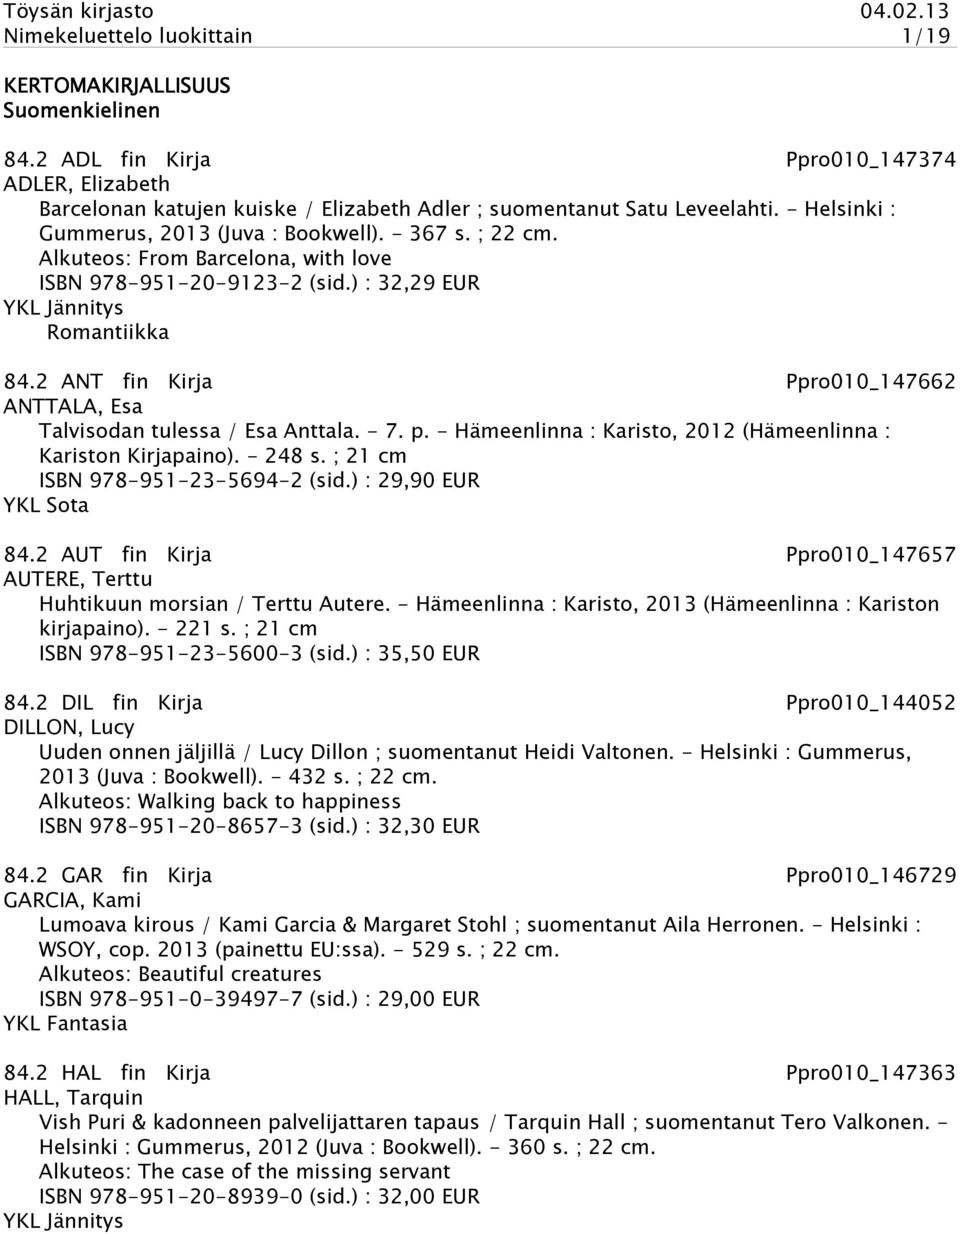 2 ANT fin Kirja Ppro010_147662 ANTTALA, Esa Talvisodan tulessa / Esa Anttala. - 7. p. - Hämeenlinna : Karisto, 2012 (Hämeenlinna : Kariston Kirjapaino). - 248 s. ; 21 cm ISBN 978-951-23-5694-2 (sid.